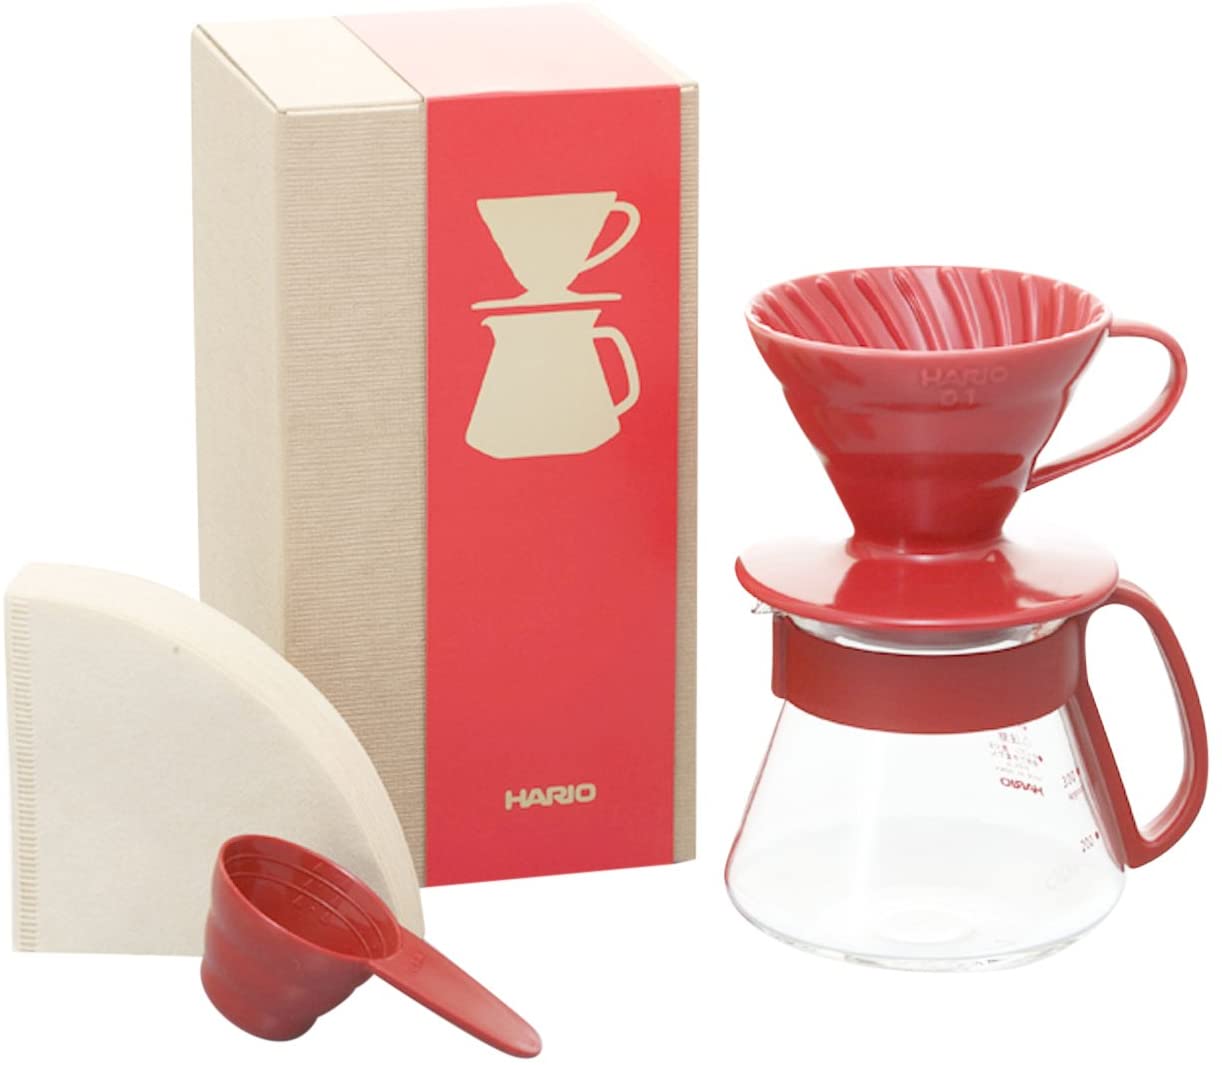  Hario V60 Plastic Coffee Dripper Pour Over Cone Coffee